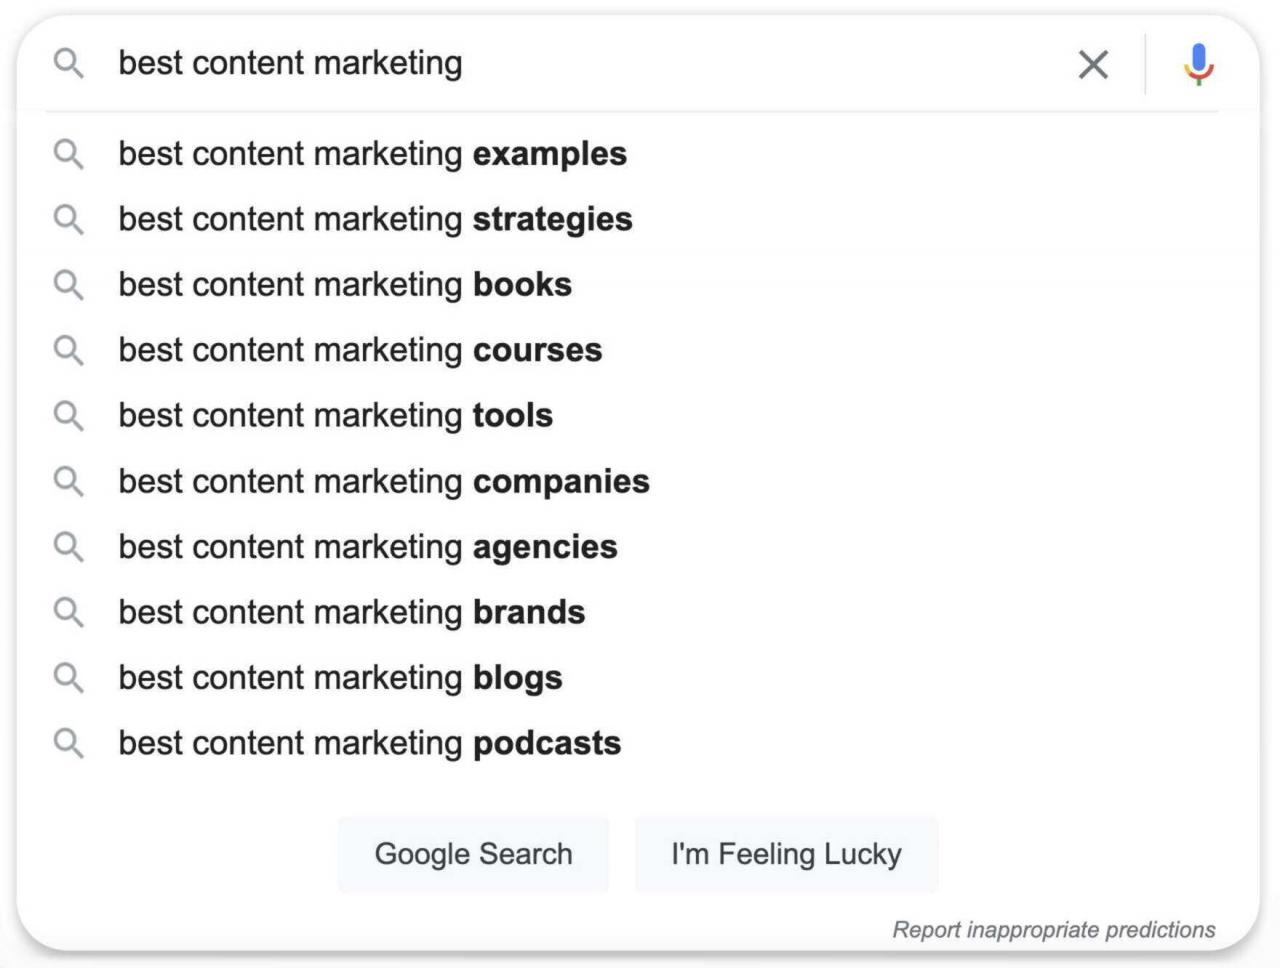 谷歌自动填充“最佳内容营销”